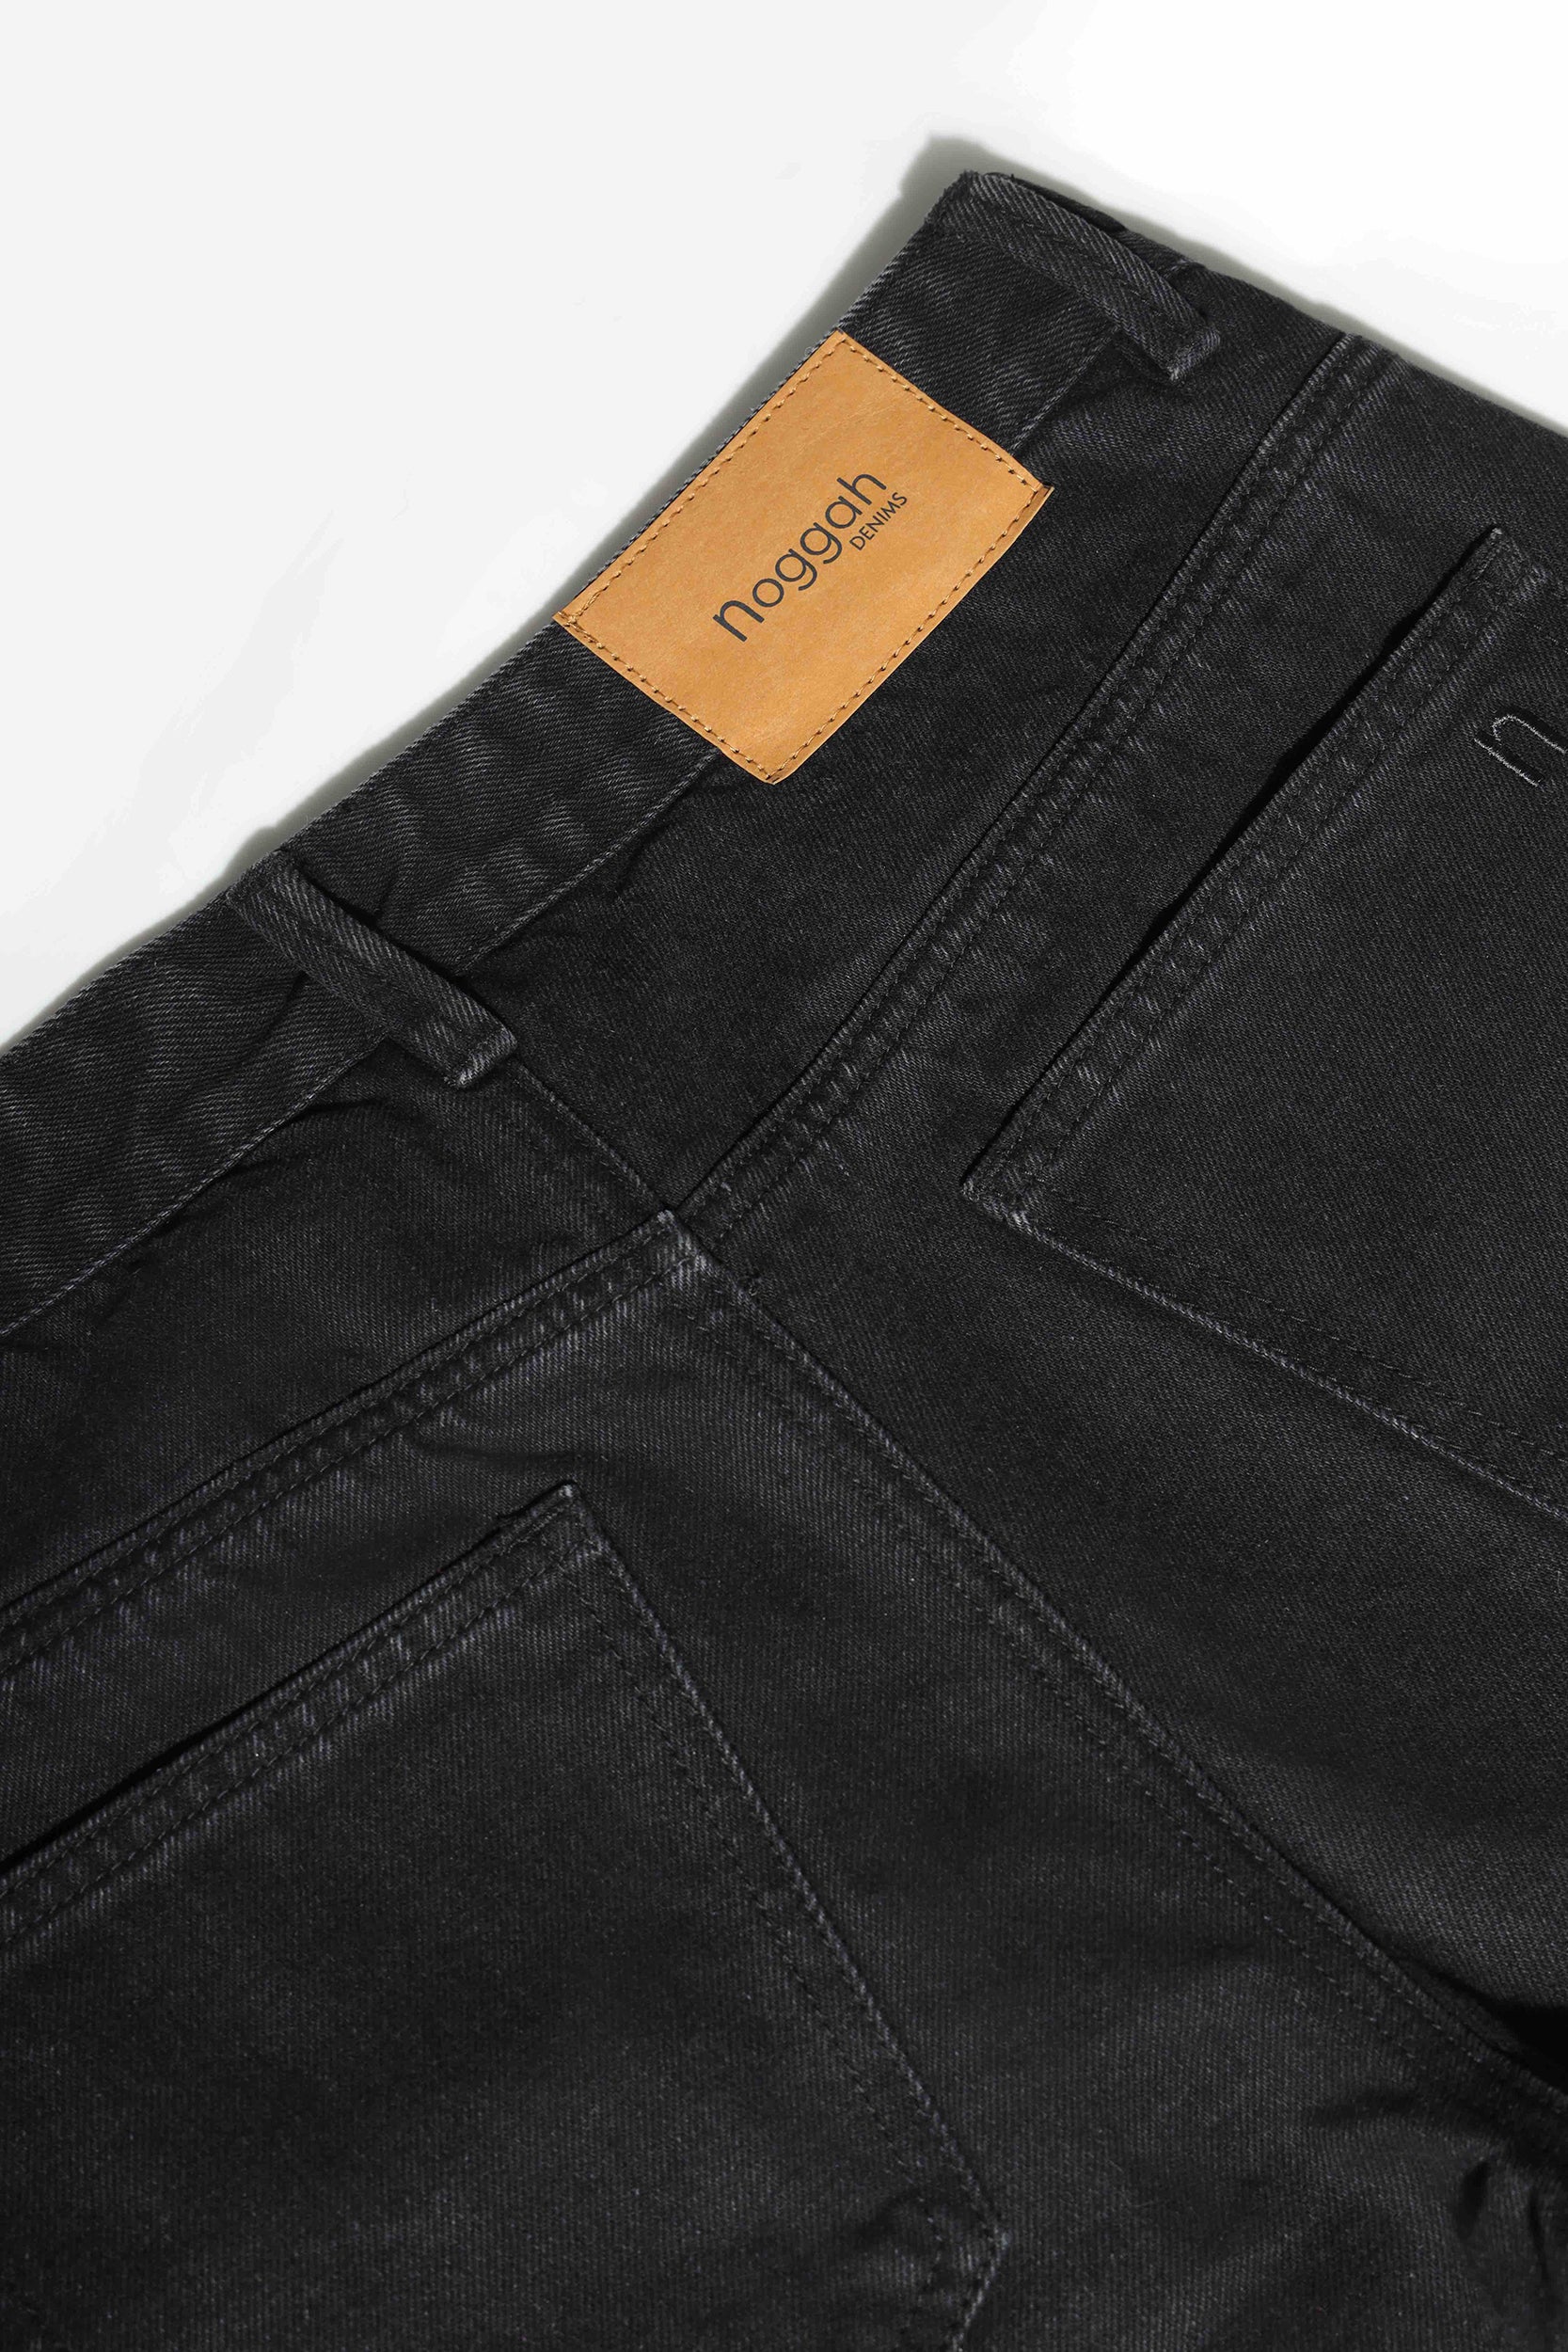 Buy Highlander Black Slim Fit Track Pants for Men Online at Rs449  Ketch